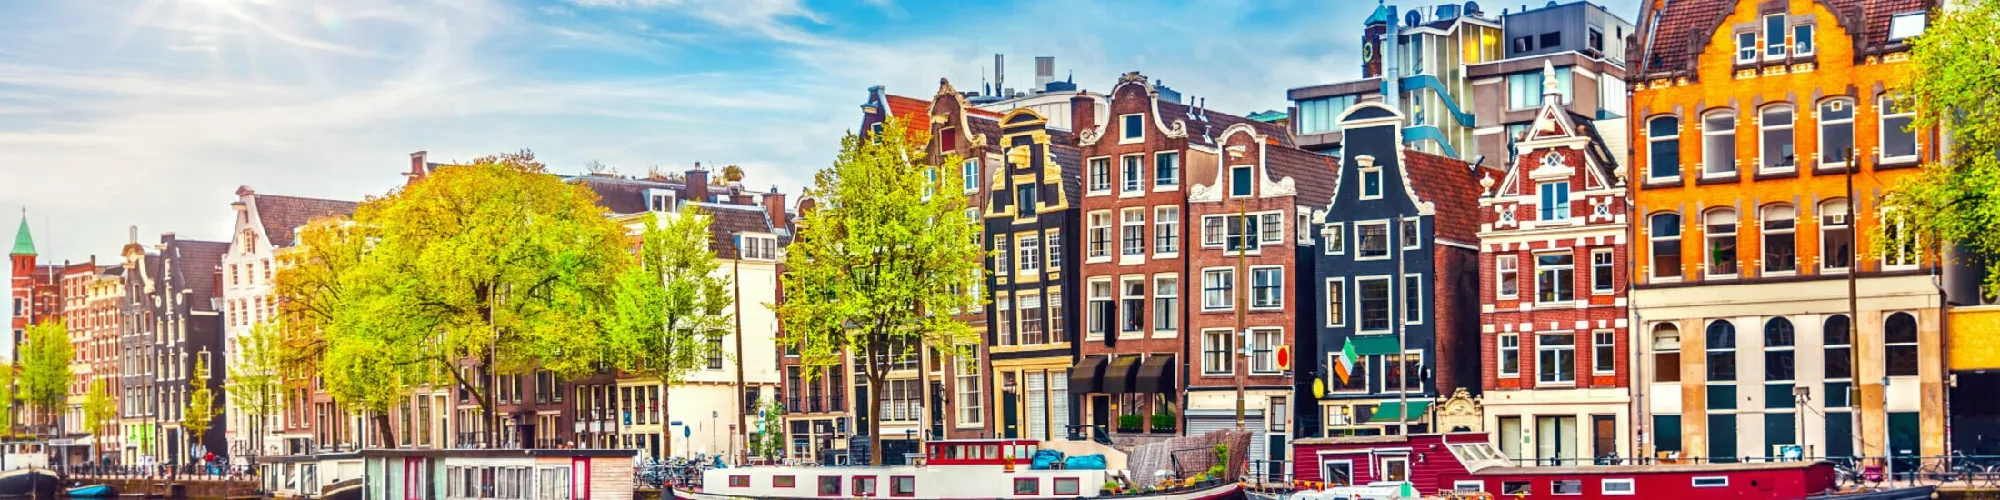 Städtereise Amsterdam background image